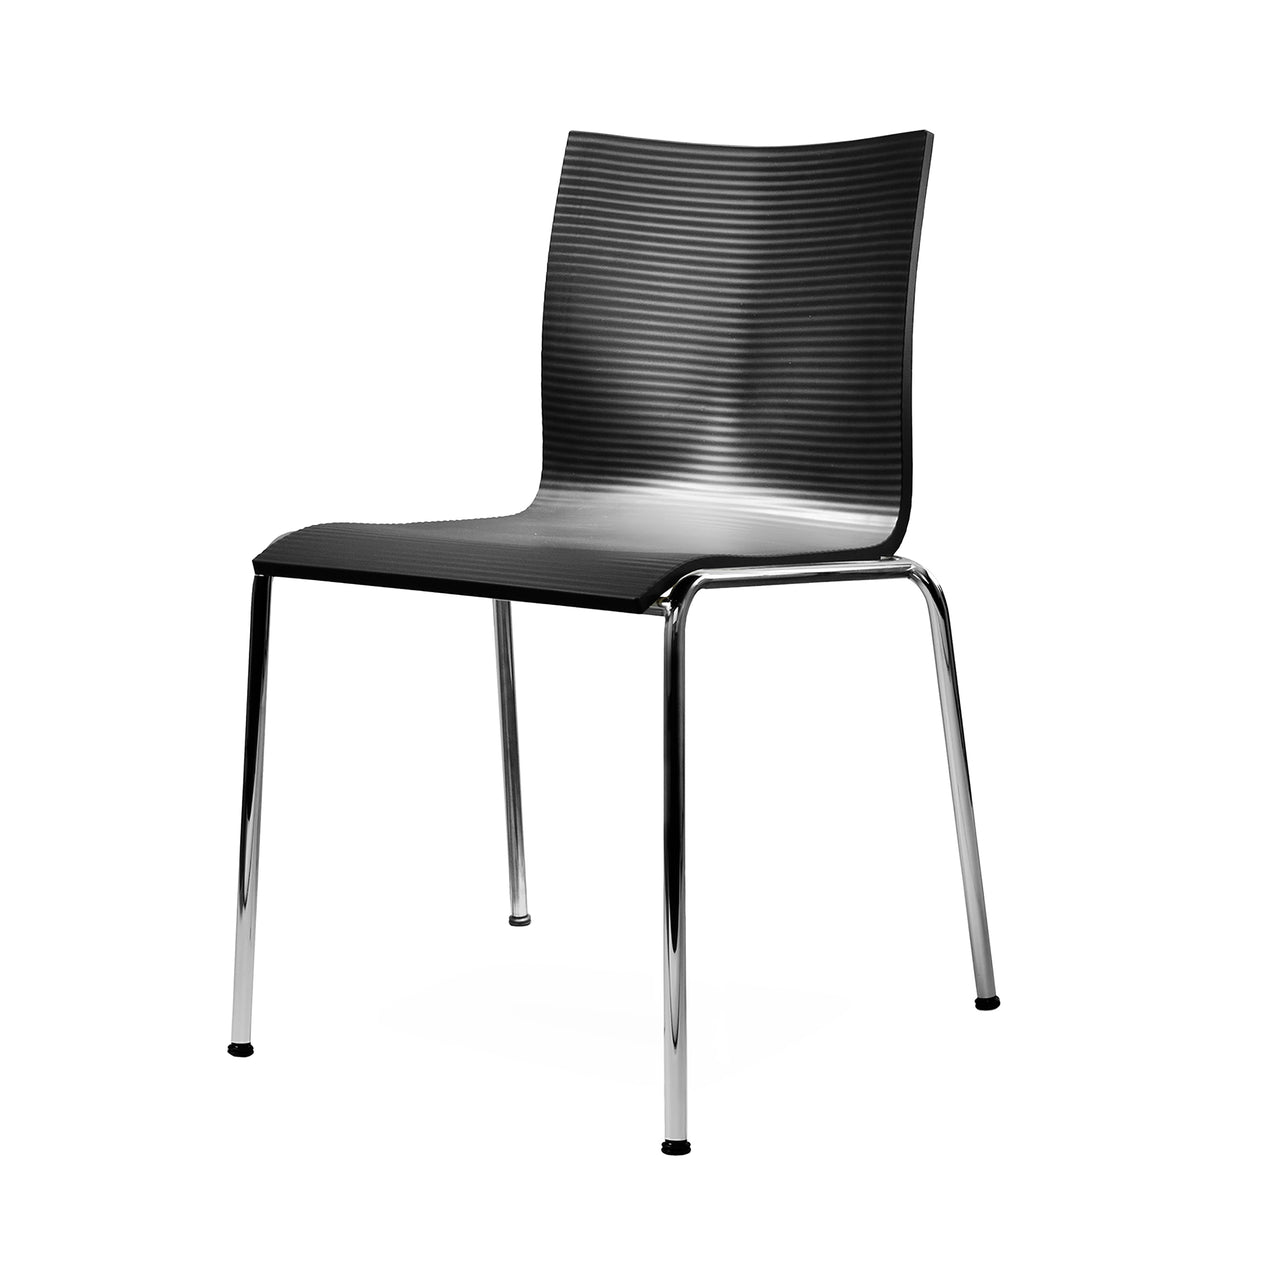 Chairik XL 121 Chair: 4-Legs + Black + Polished Chrome